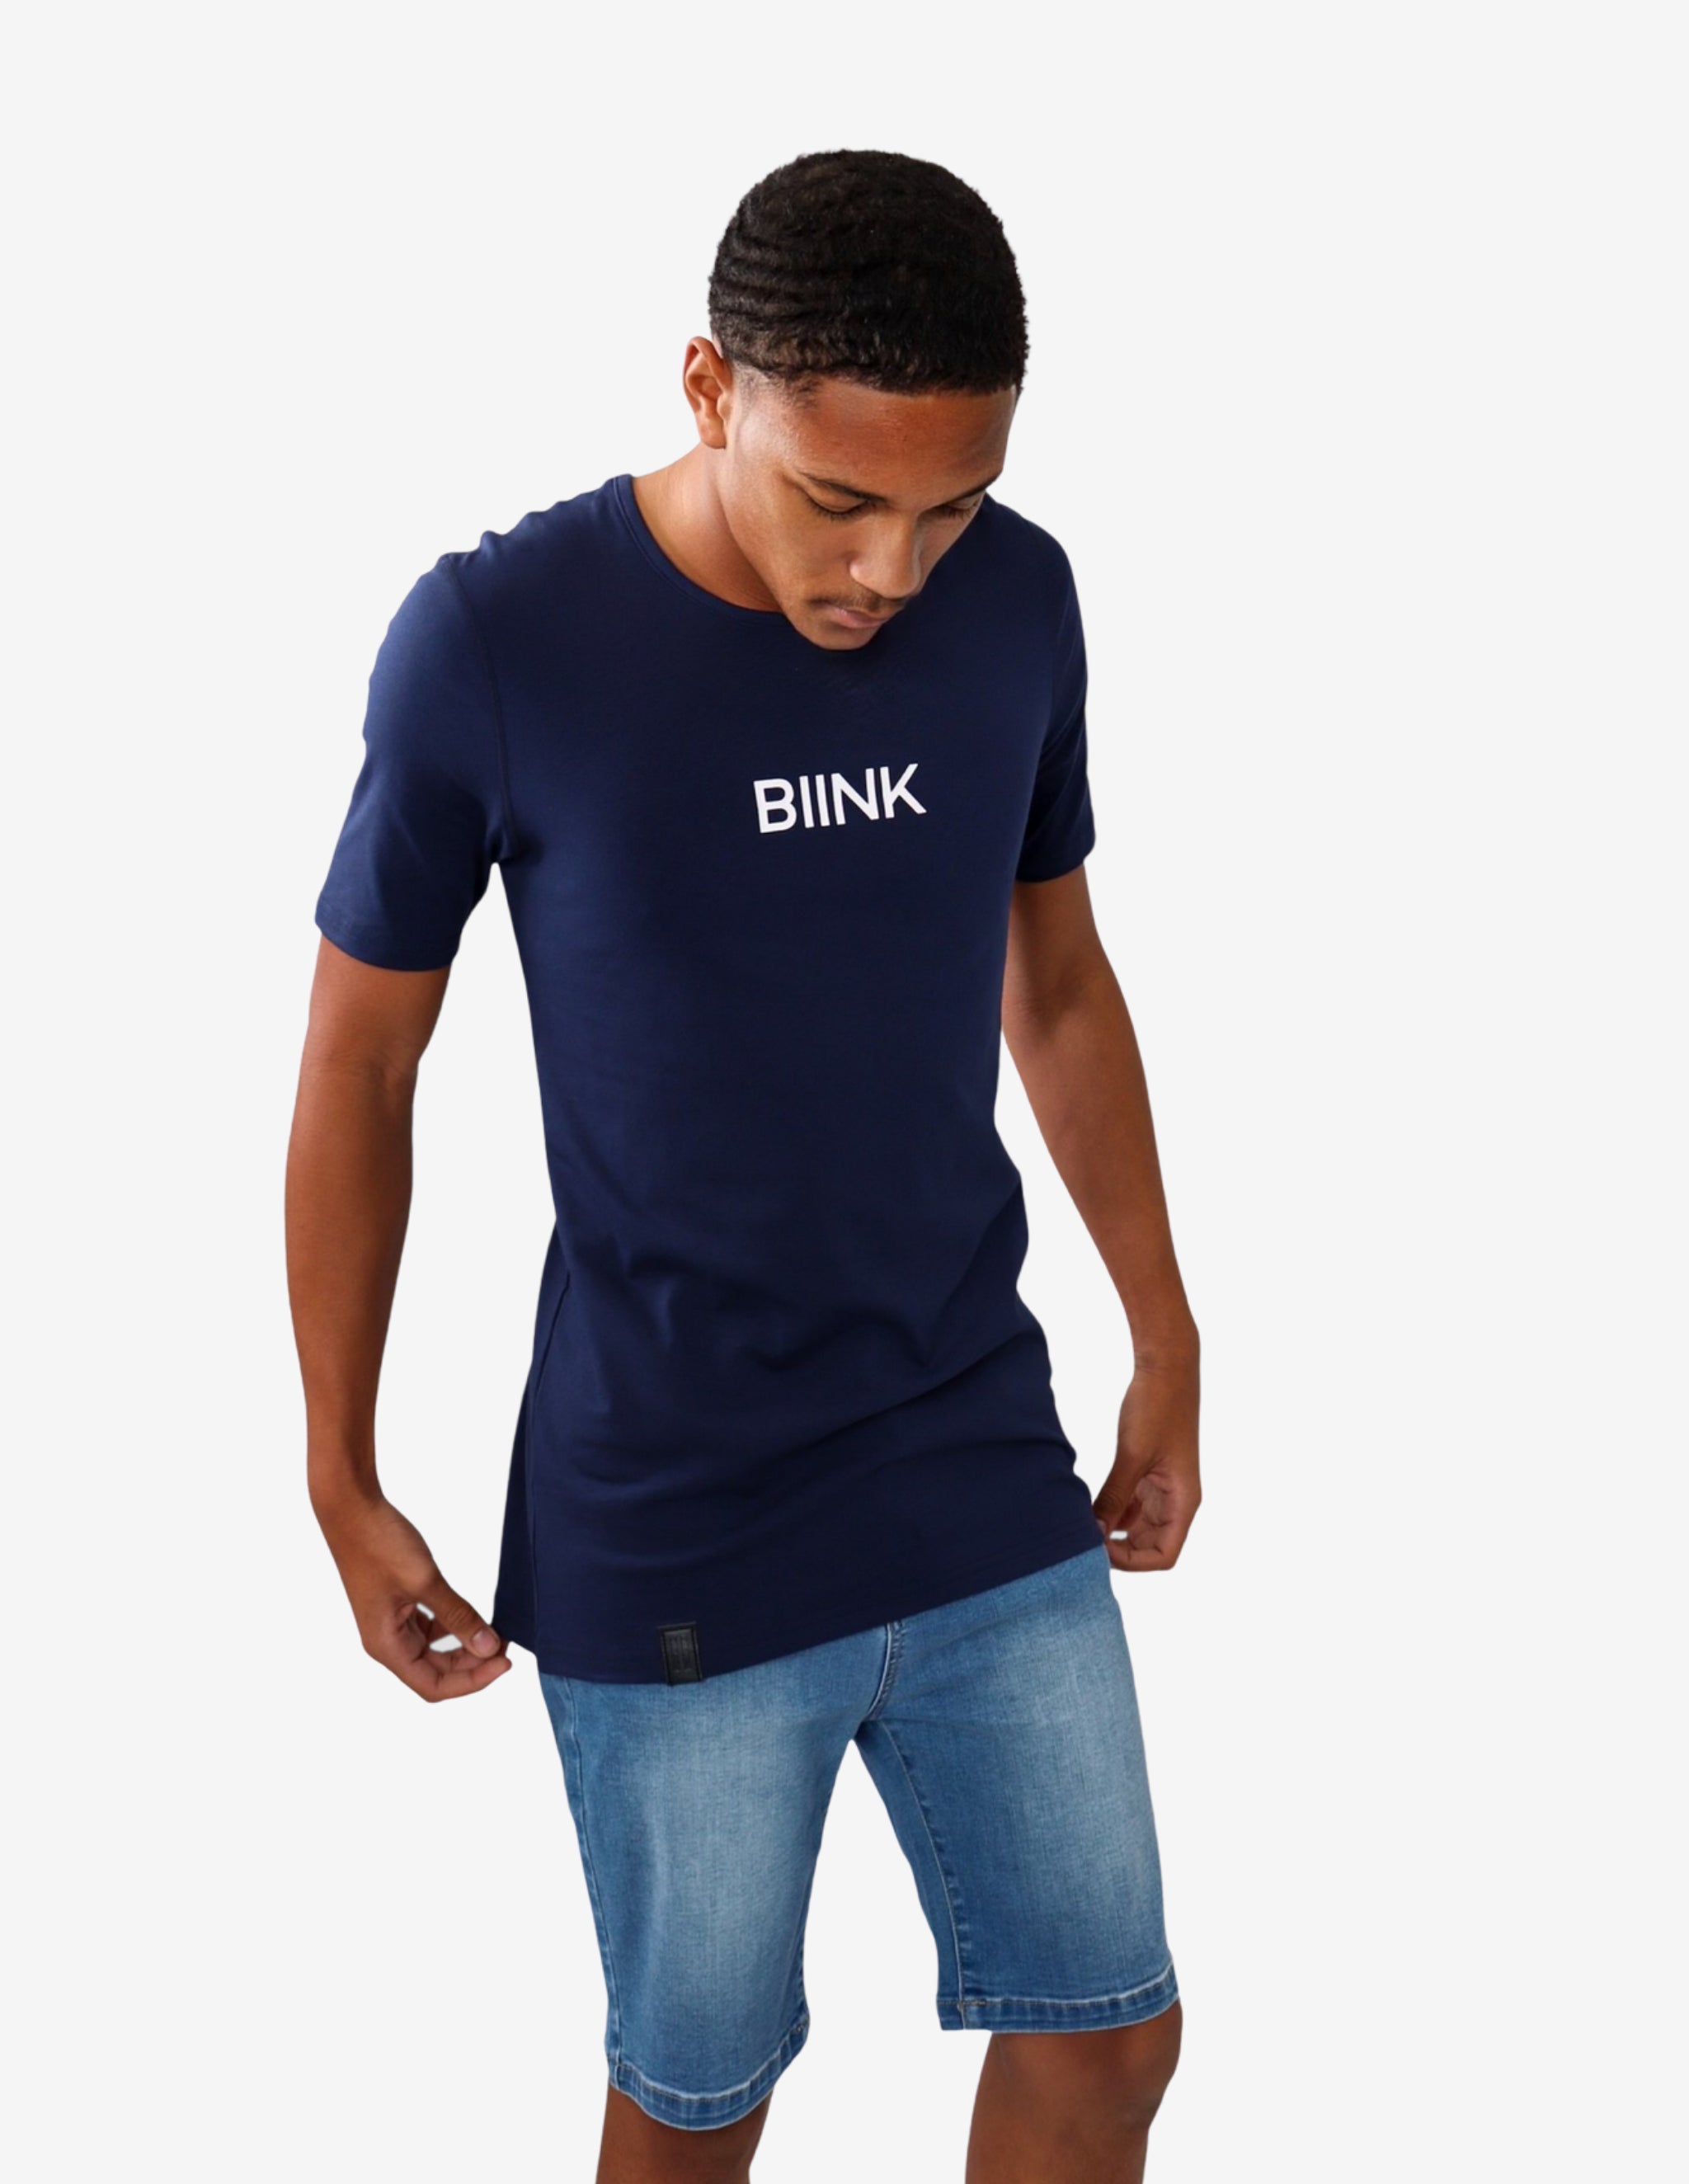 Bold Logo Cardinal Essential Tee - Navy Blue-T-shirt Man-Biink Athleisure-Guru Muscle